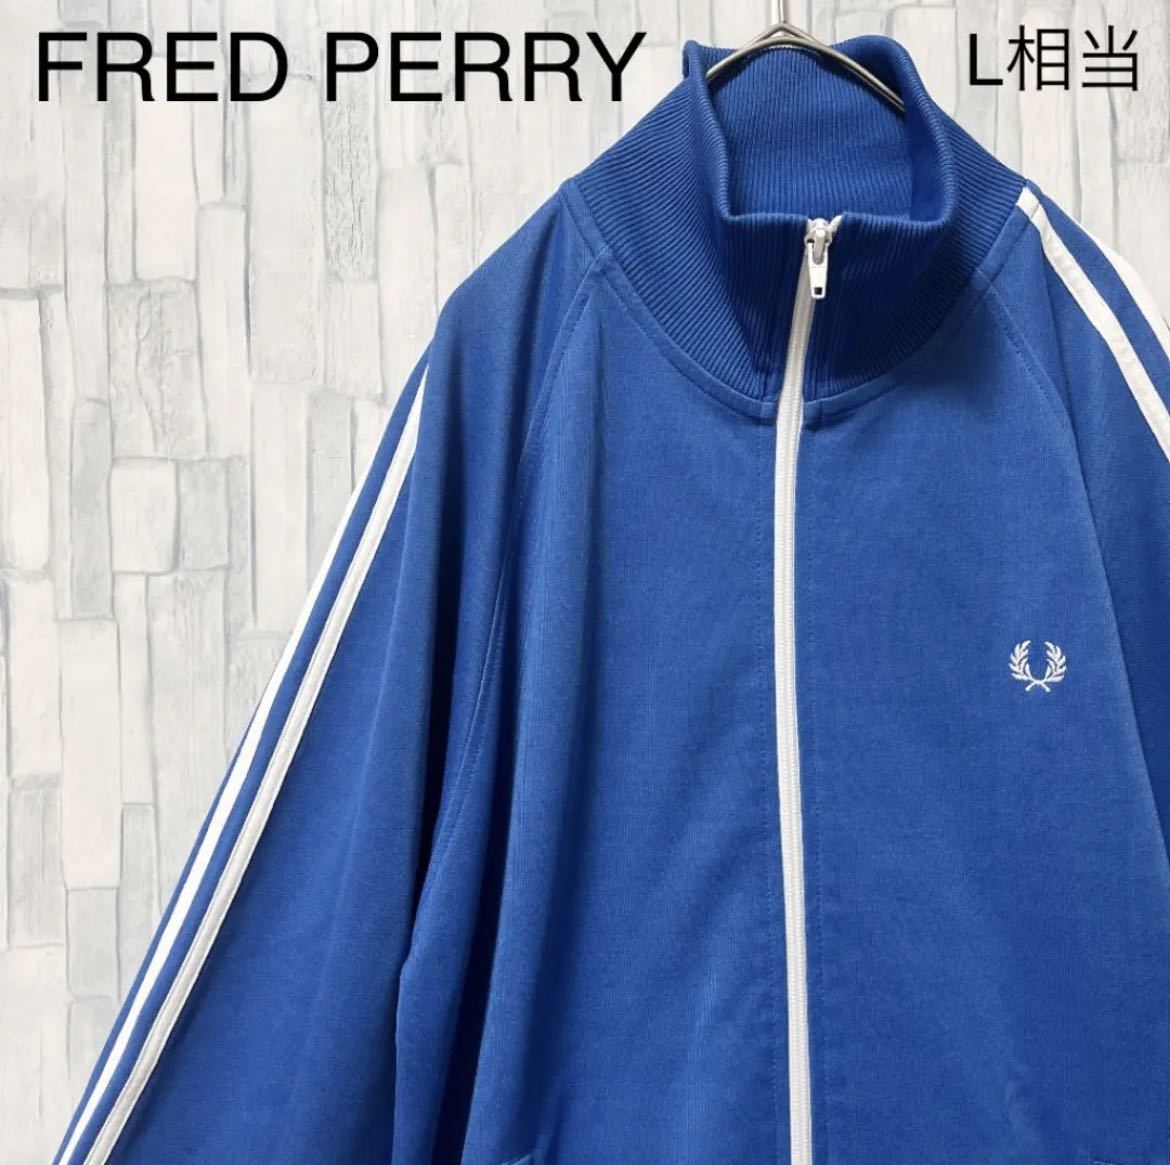 FRED PERRY フレッドペリー ジャージ 上 トラックジャケット S ブルー 長袖 ワンポイントロゴ 刺繍ロゴ 2ライン 2ストライプ  ポルトガル製